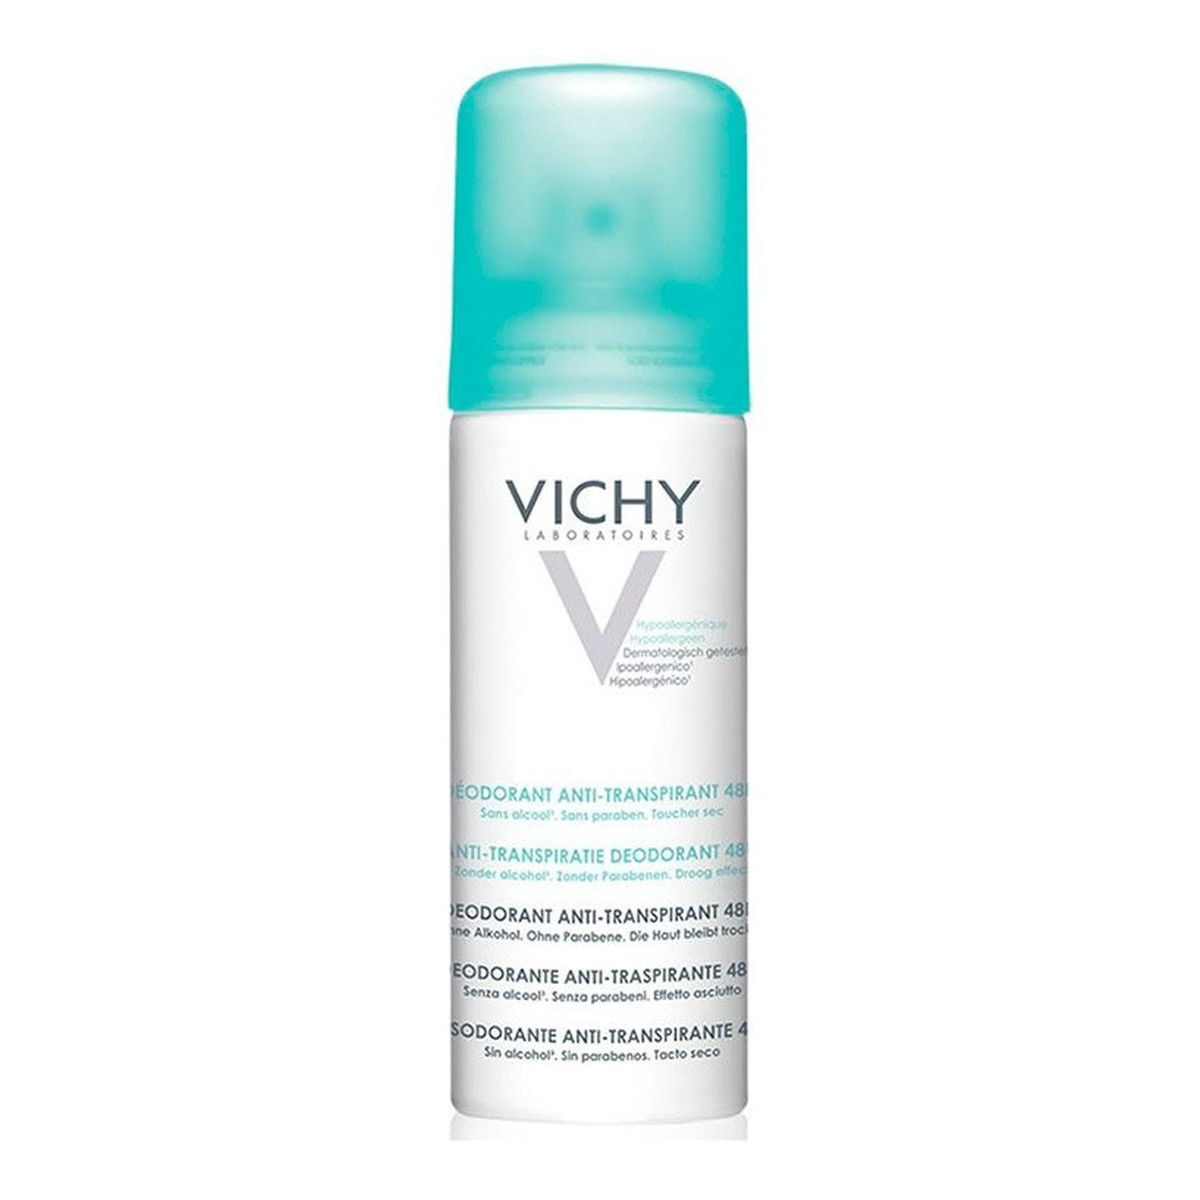 Vichy Deodorant Anti-transpirant 48h Dezodorant przeciw nadmiernej potliwości 125ml